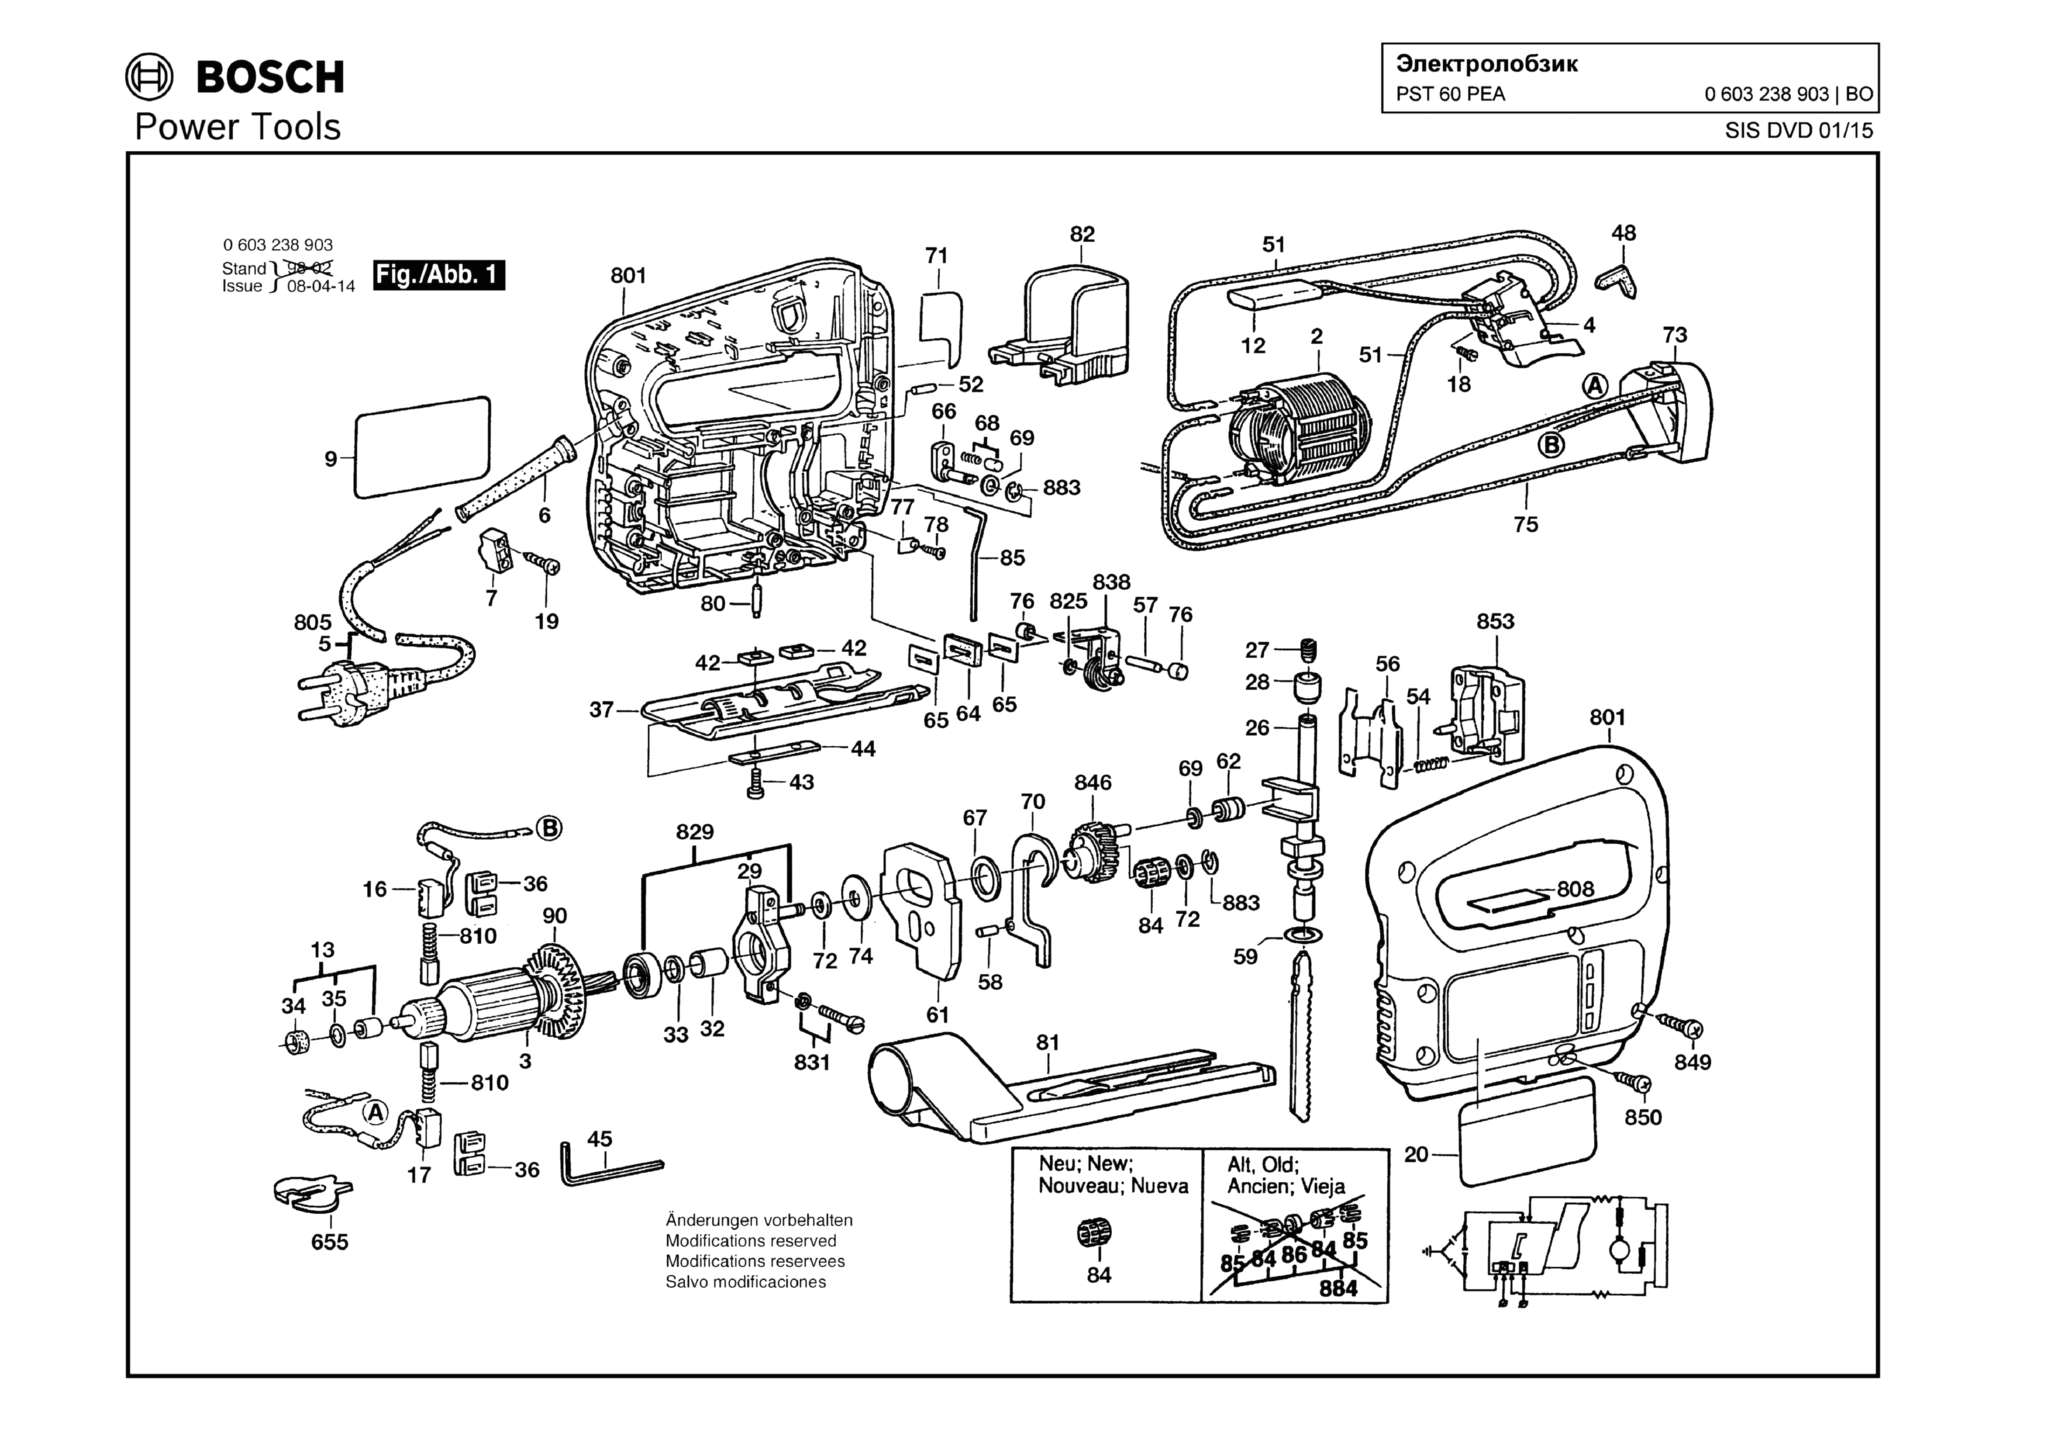 Запчасти, схема и деталировка Bosch PST 60 PEA (ТИП 603238903)